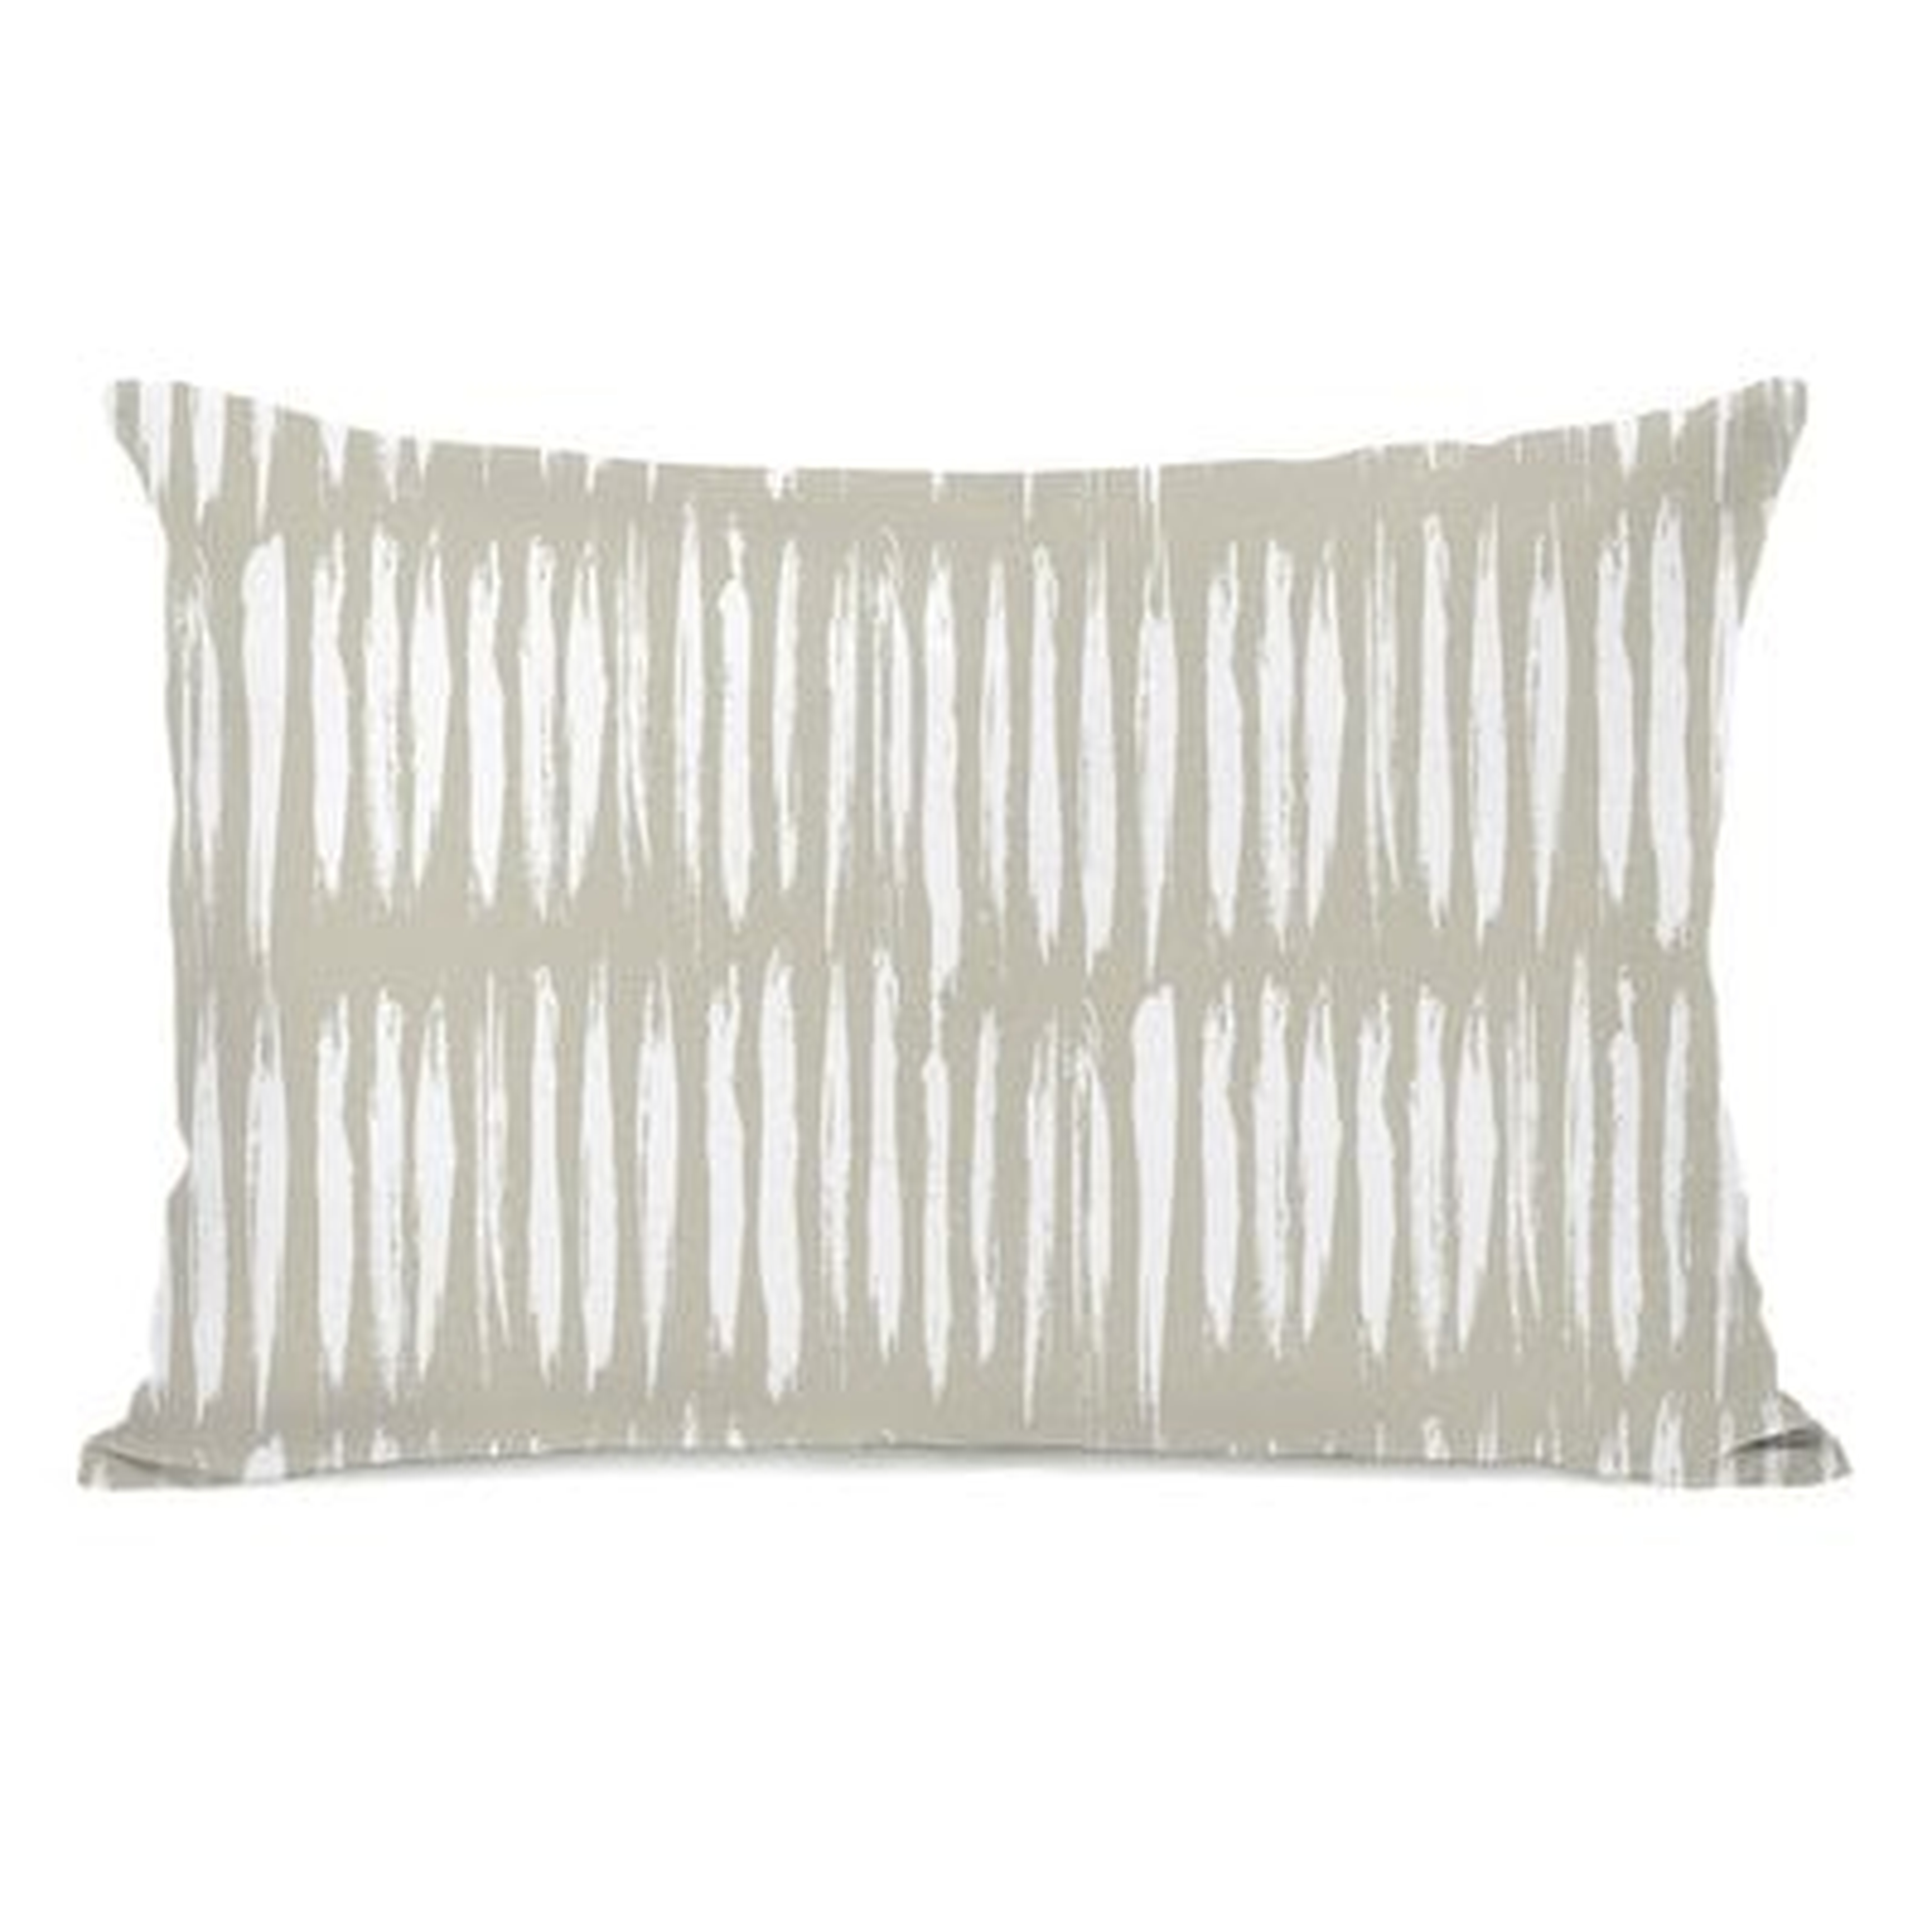 Patnaude Outdoor Lumbar Pillow - Wayfair